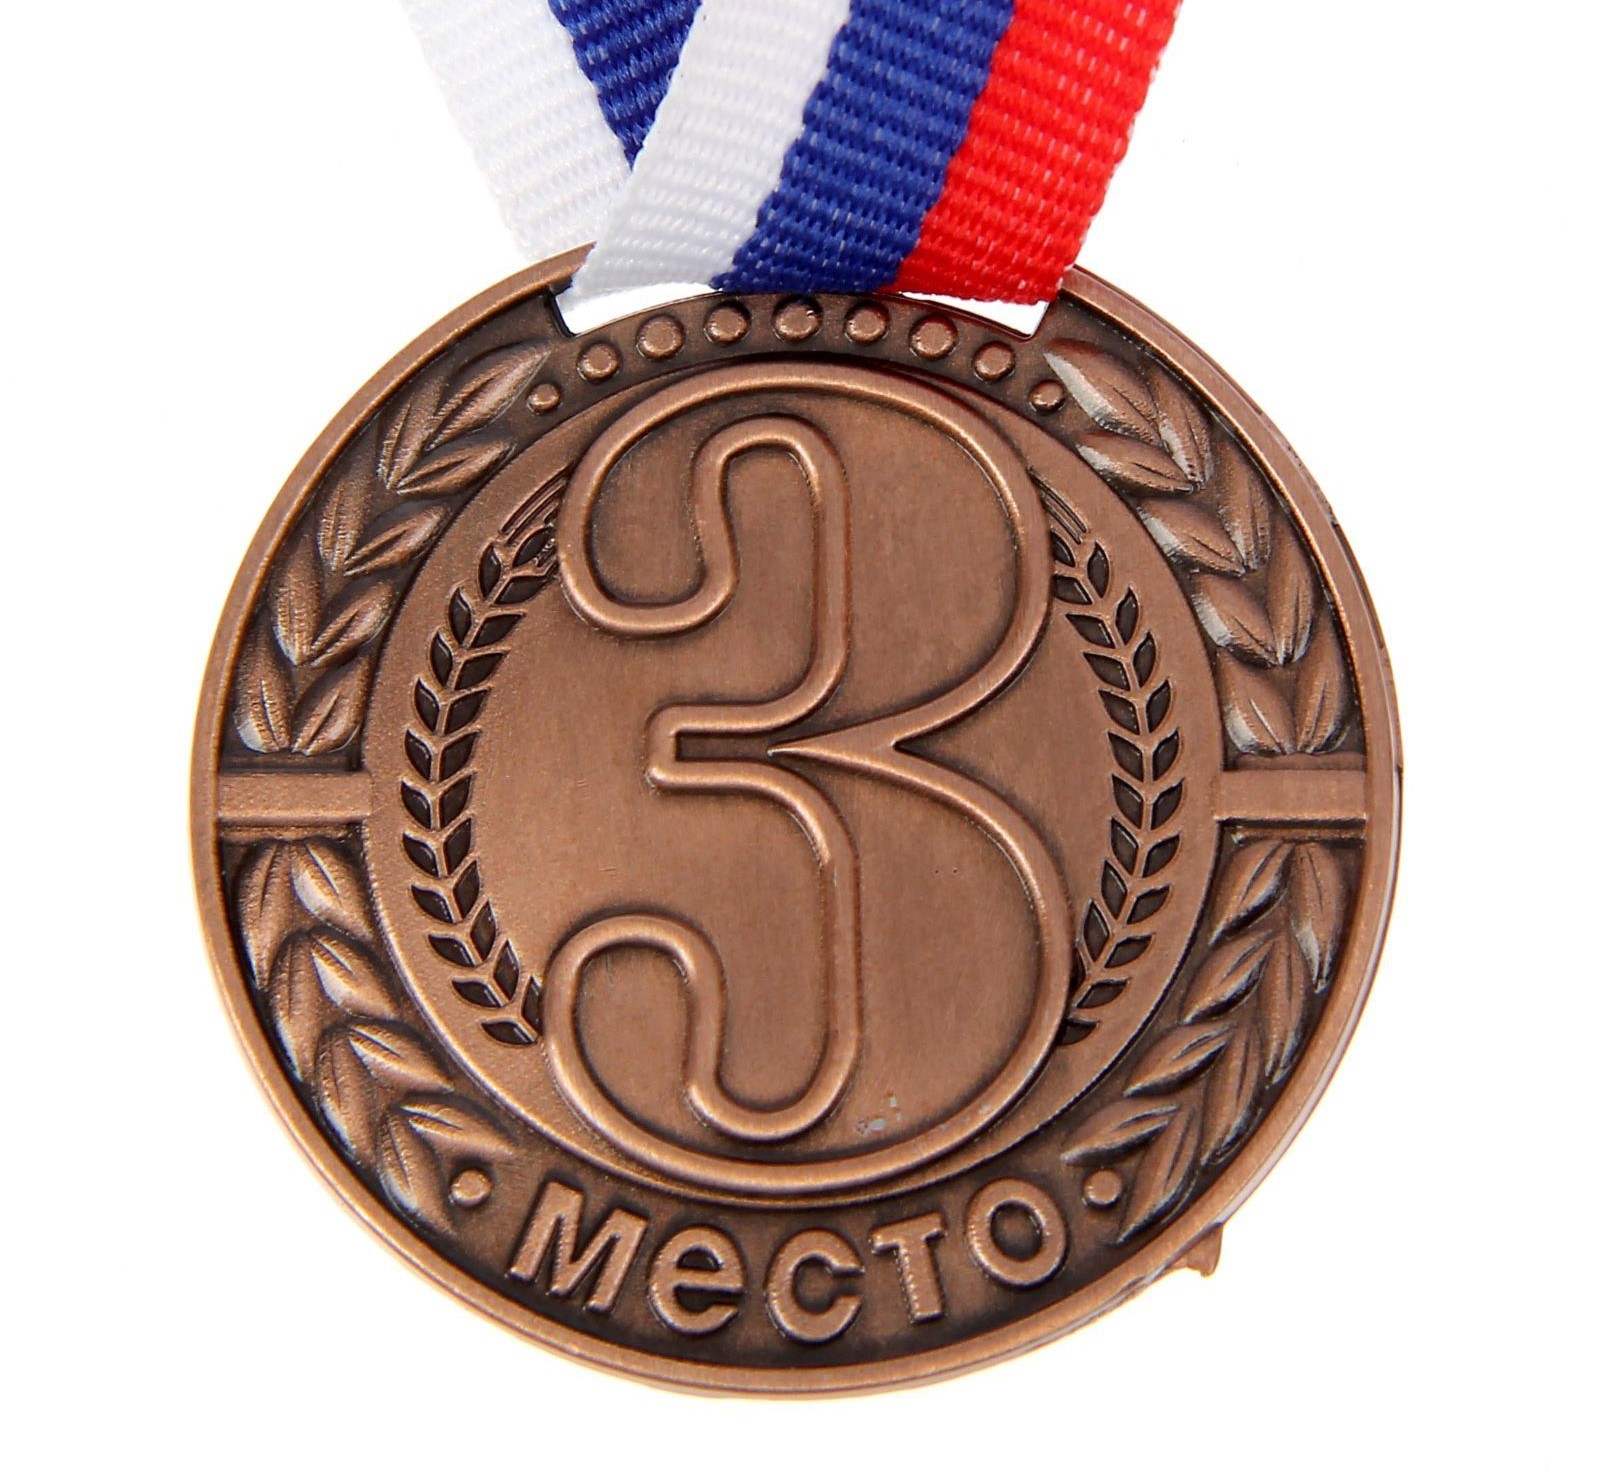 Медаль призовая Командор, 3 место, цвет бронза, диаметр 4 см